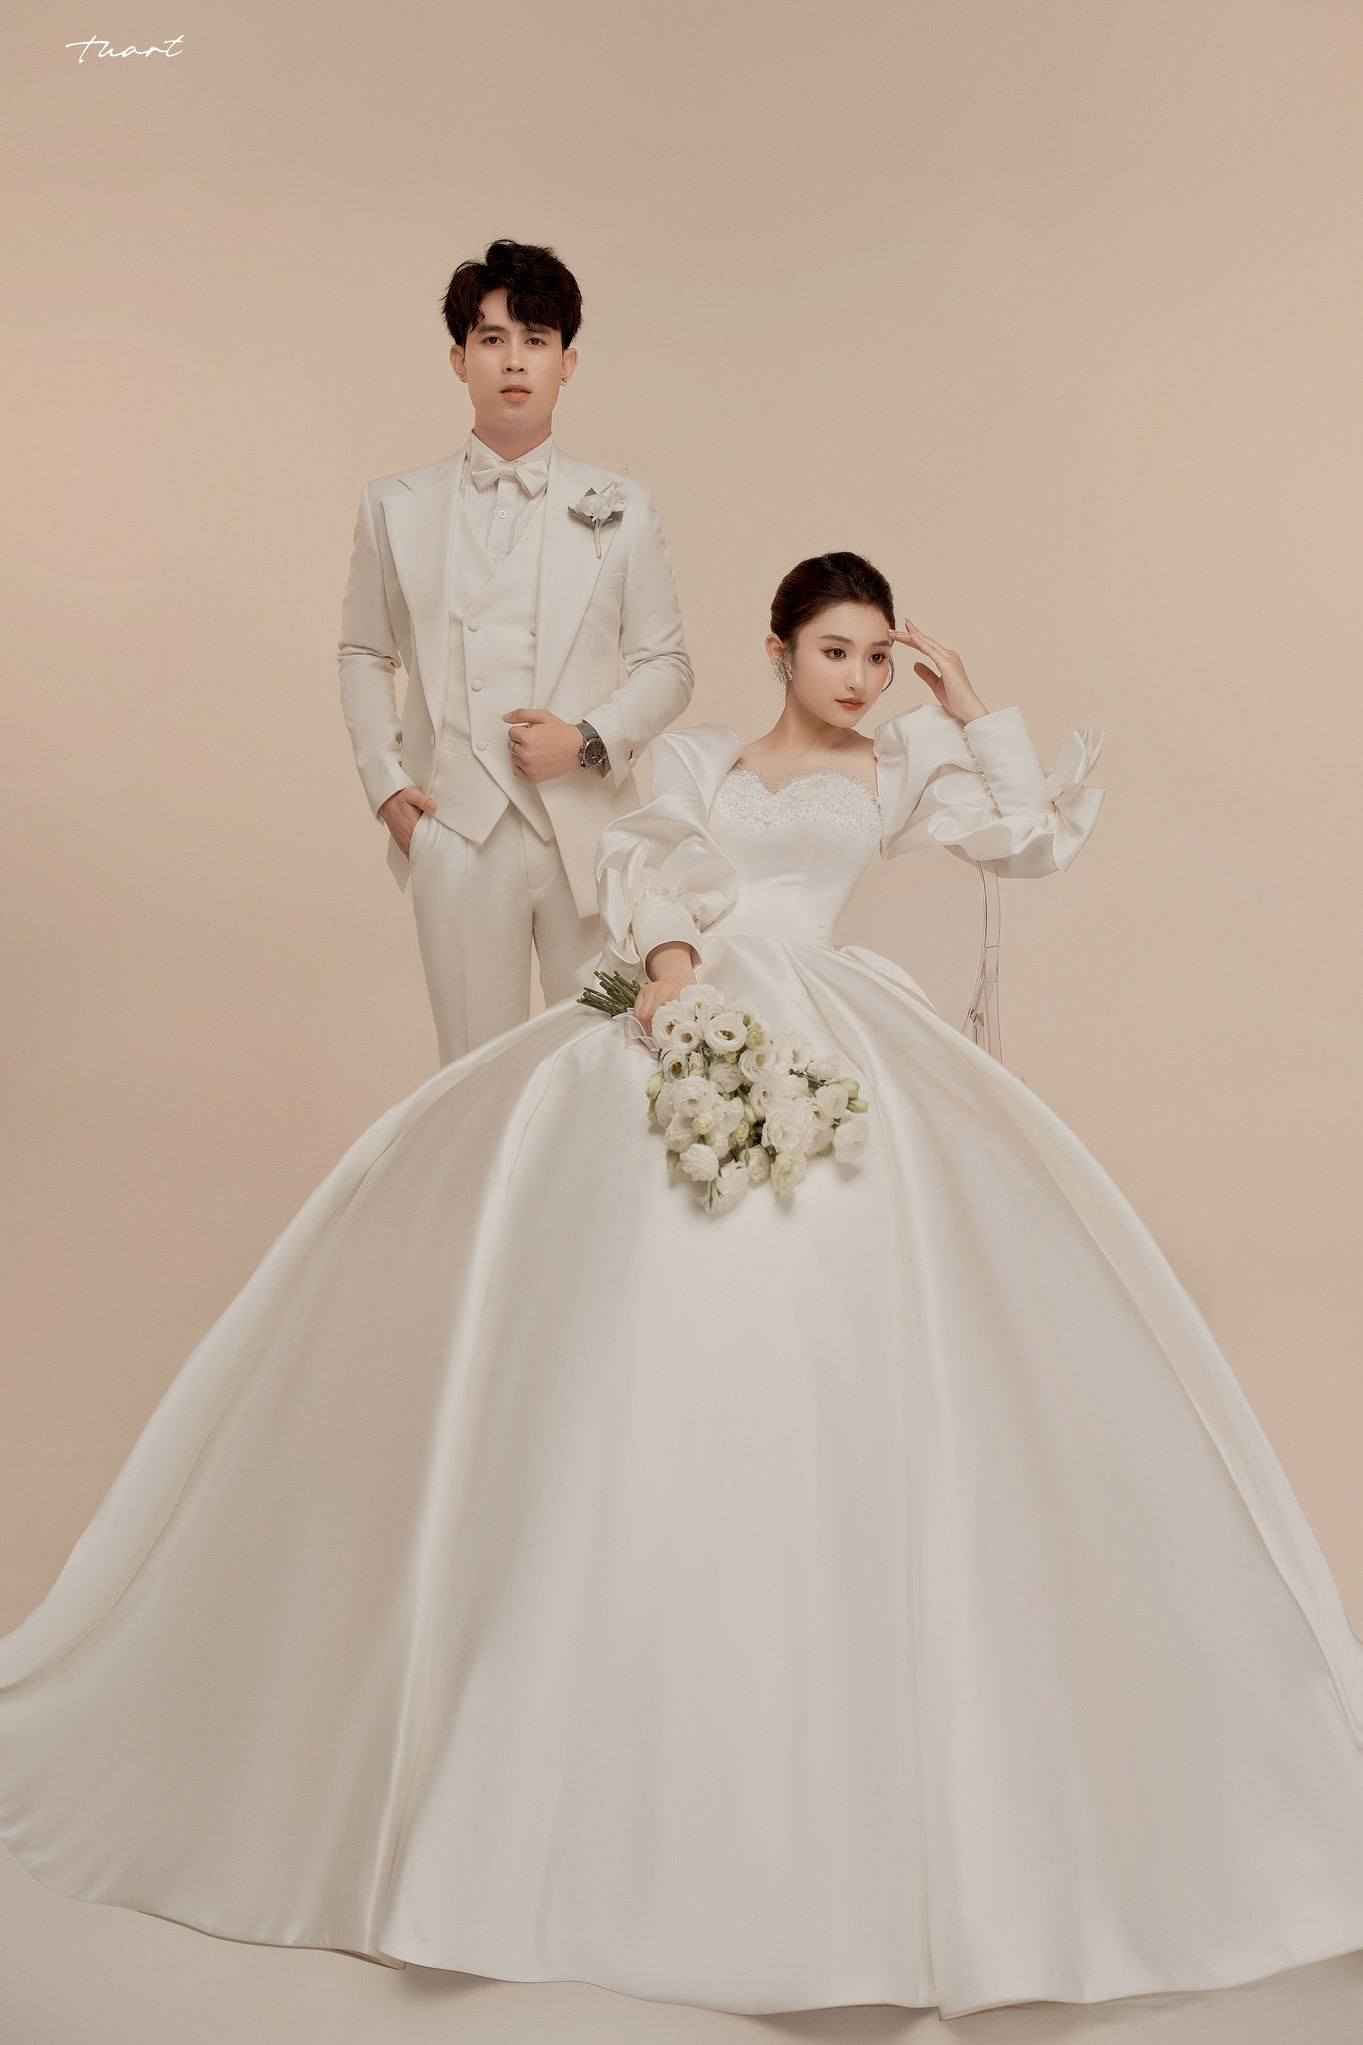 Album ảnh cưới Hàn Quốc tại phim trường độc quyền của TuArt: Việt Anh & Sam 9